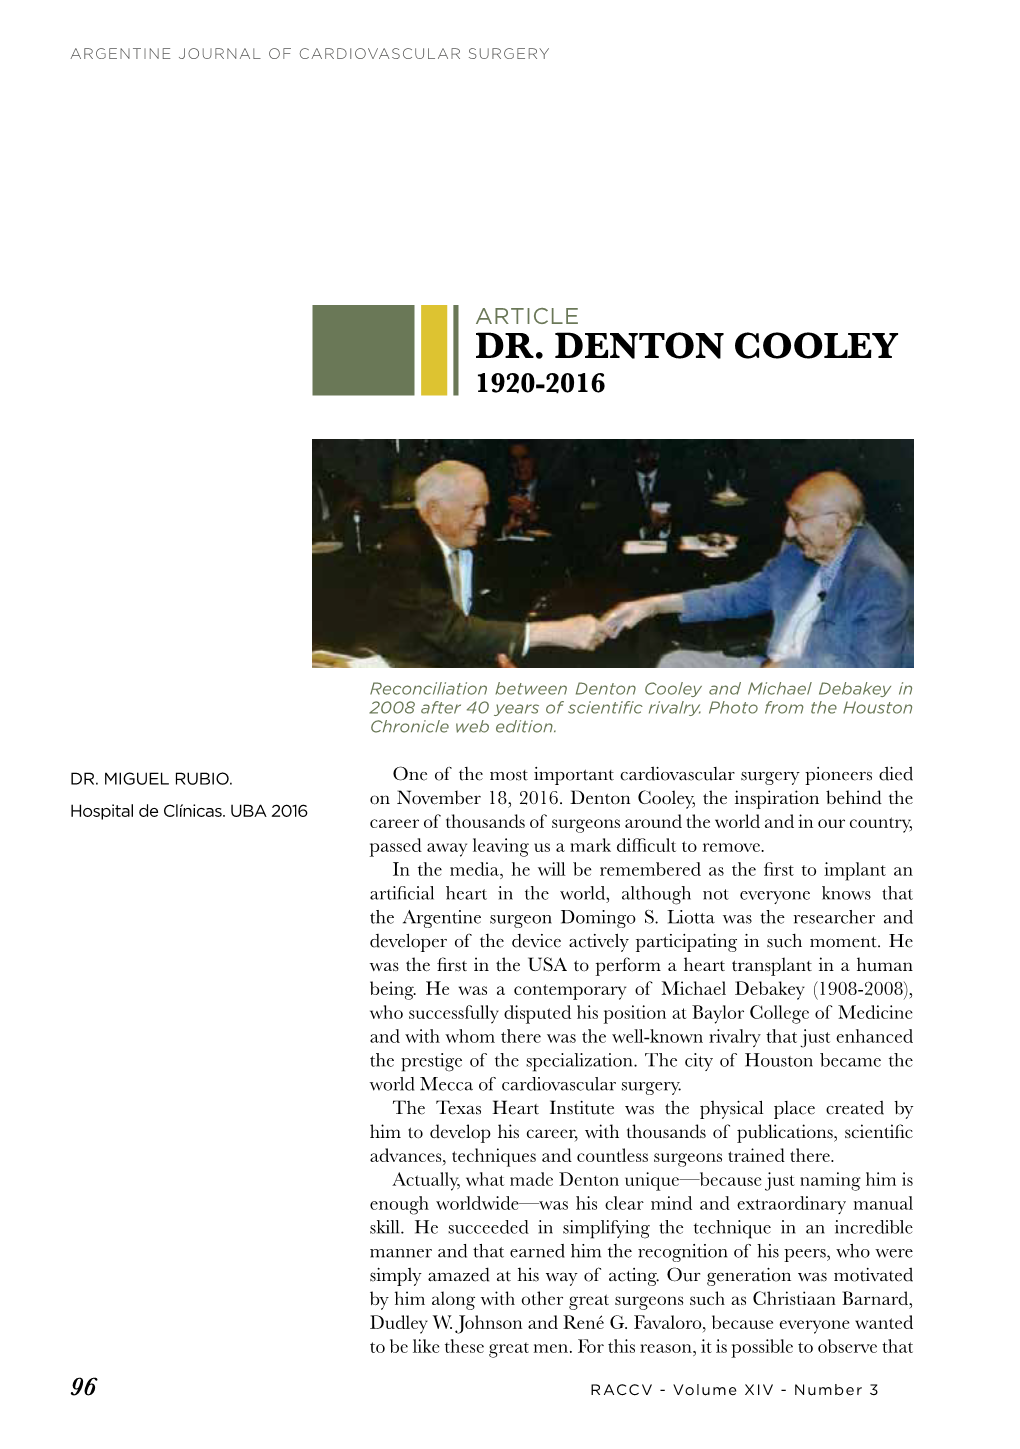 Dr. Denton Cooley 1920-2016